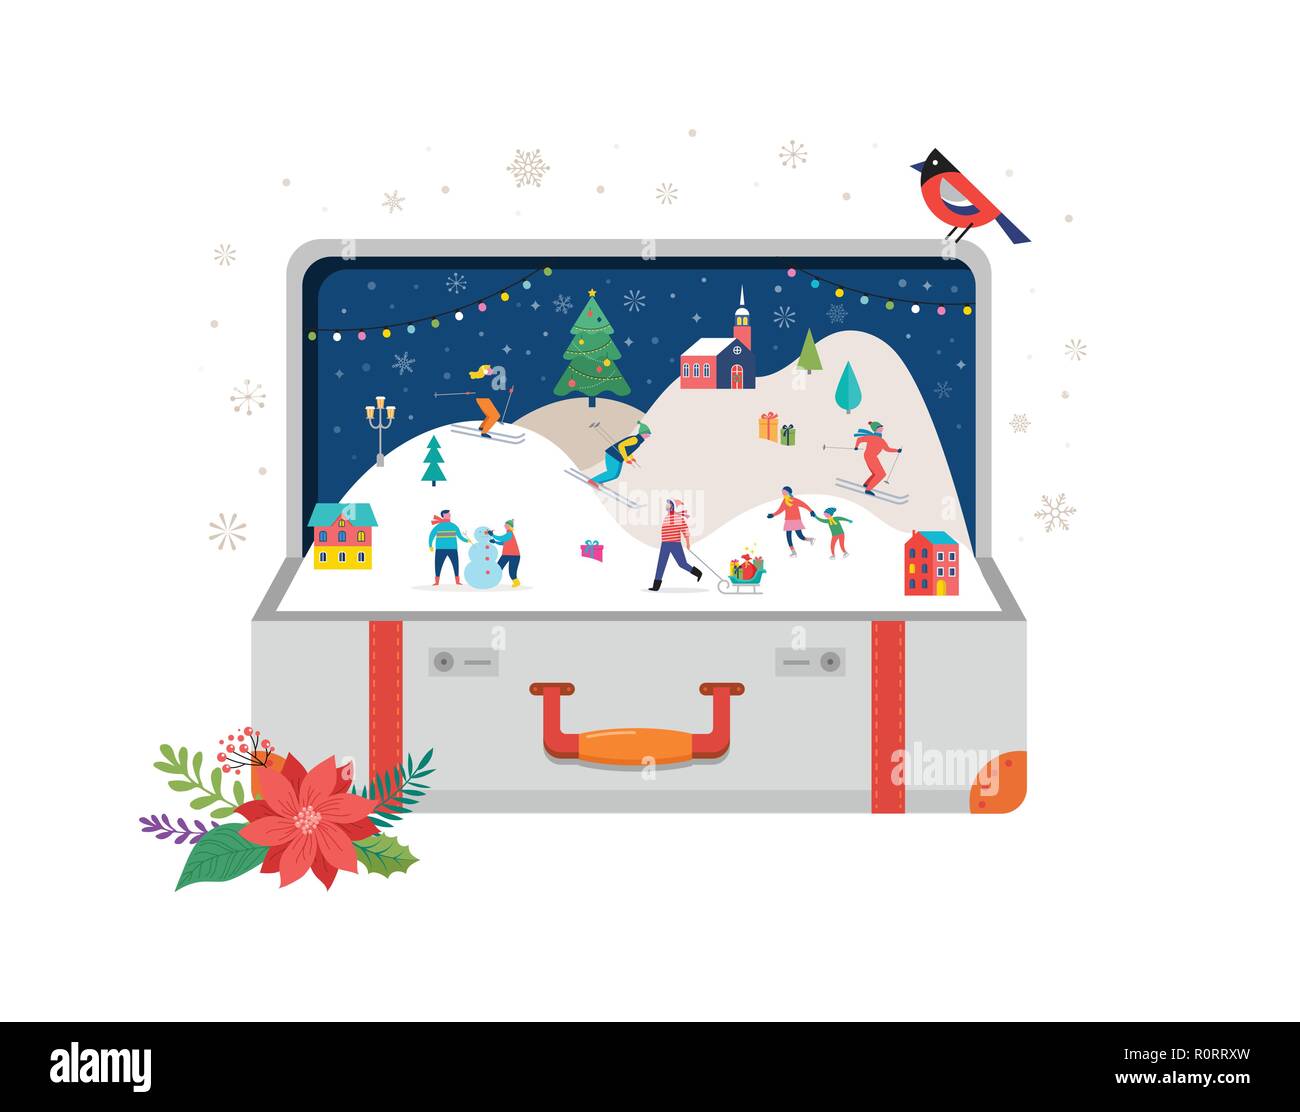 Buon Natale, Big aprire la valigia con scena invernale e piccole, giovani uomini e donne, famiglie avendo divertimento nella neve, sci, snowboard, slittino, pattinaggio su ghiaccio. Concetto illustrazione vettoriale Illustrazione Vettoriale